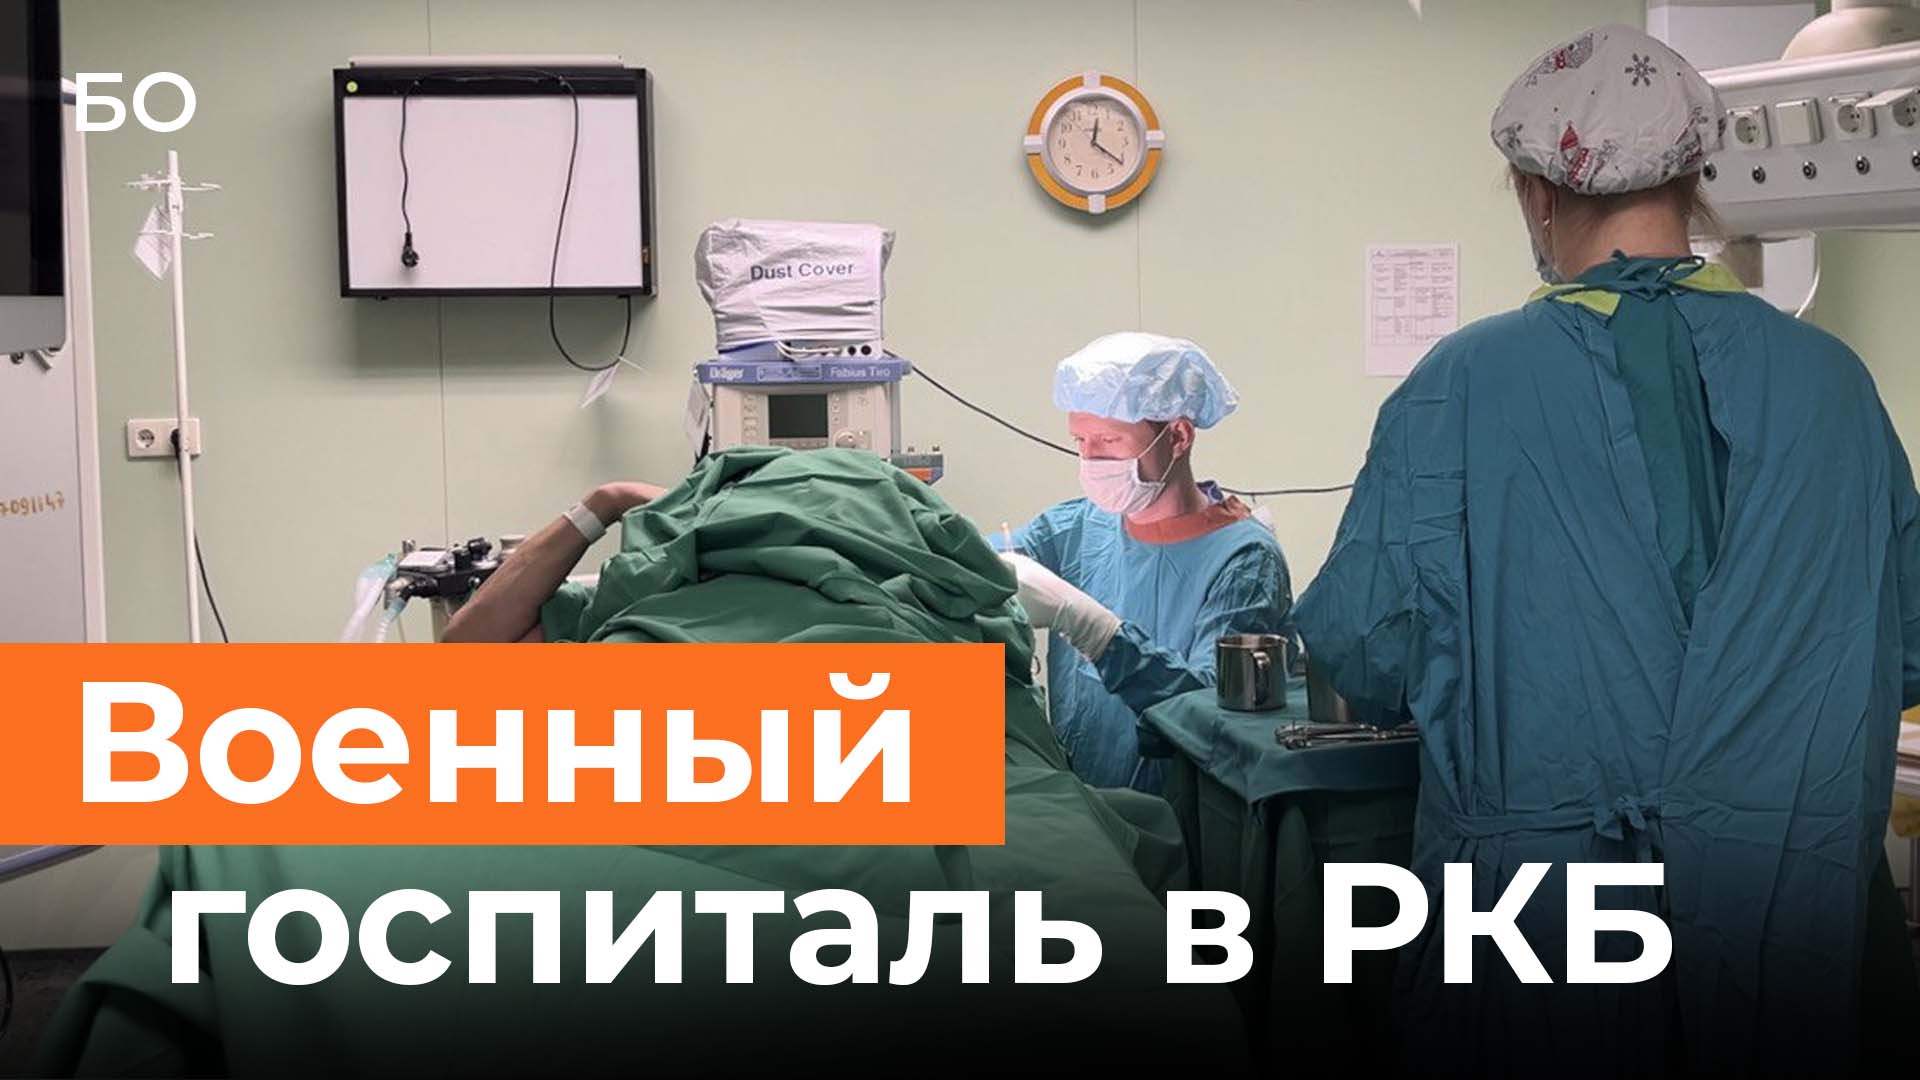 Один день из жизни военного госпиталя РКБ в Казани